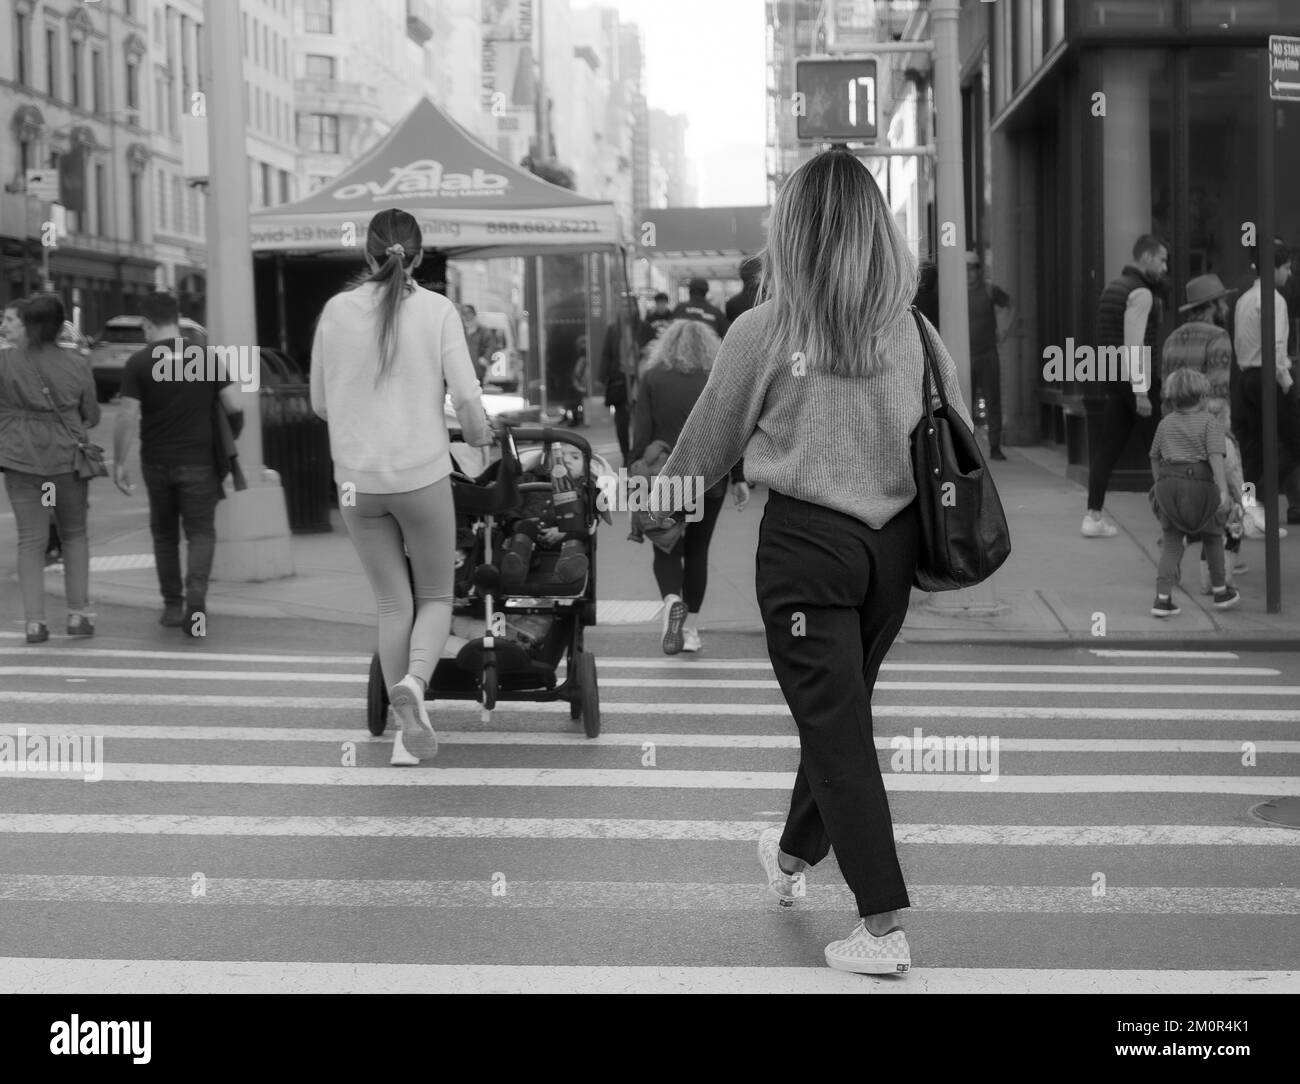 Jeune femme blonde traversant le passage de passage - photo de derrière. Photographie urbaine en noir et blanc. Jeune mère avec poussette et bébé en arrière-plan Banque D'Images